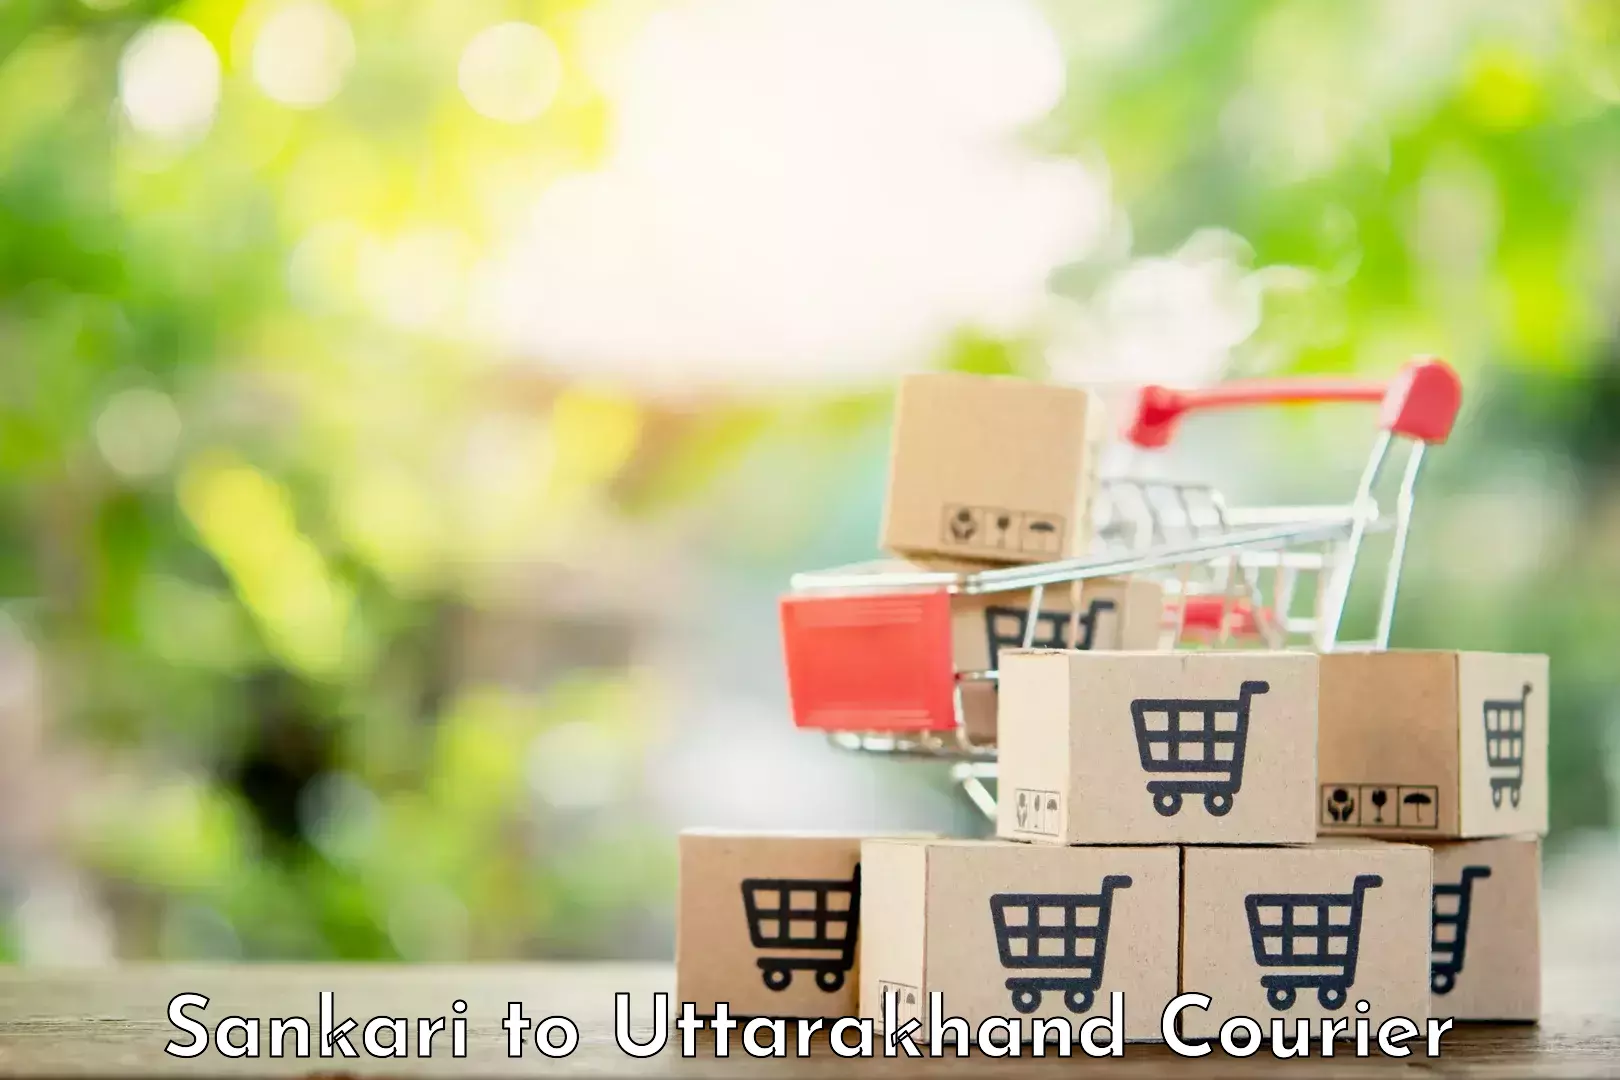 Custom courier solutions in Sankari to Uttarakhand